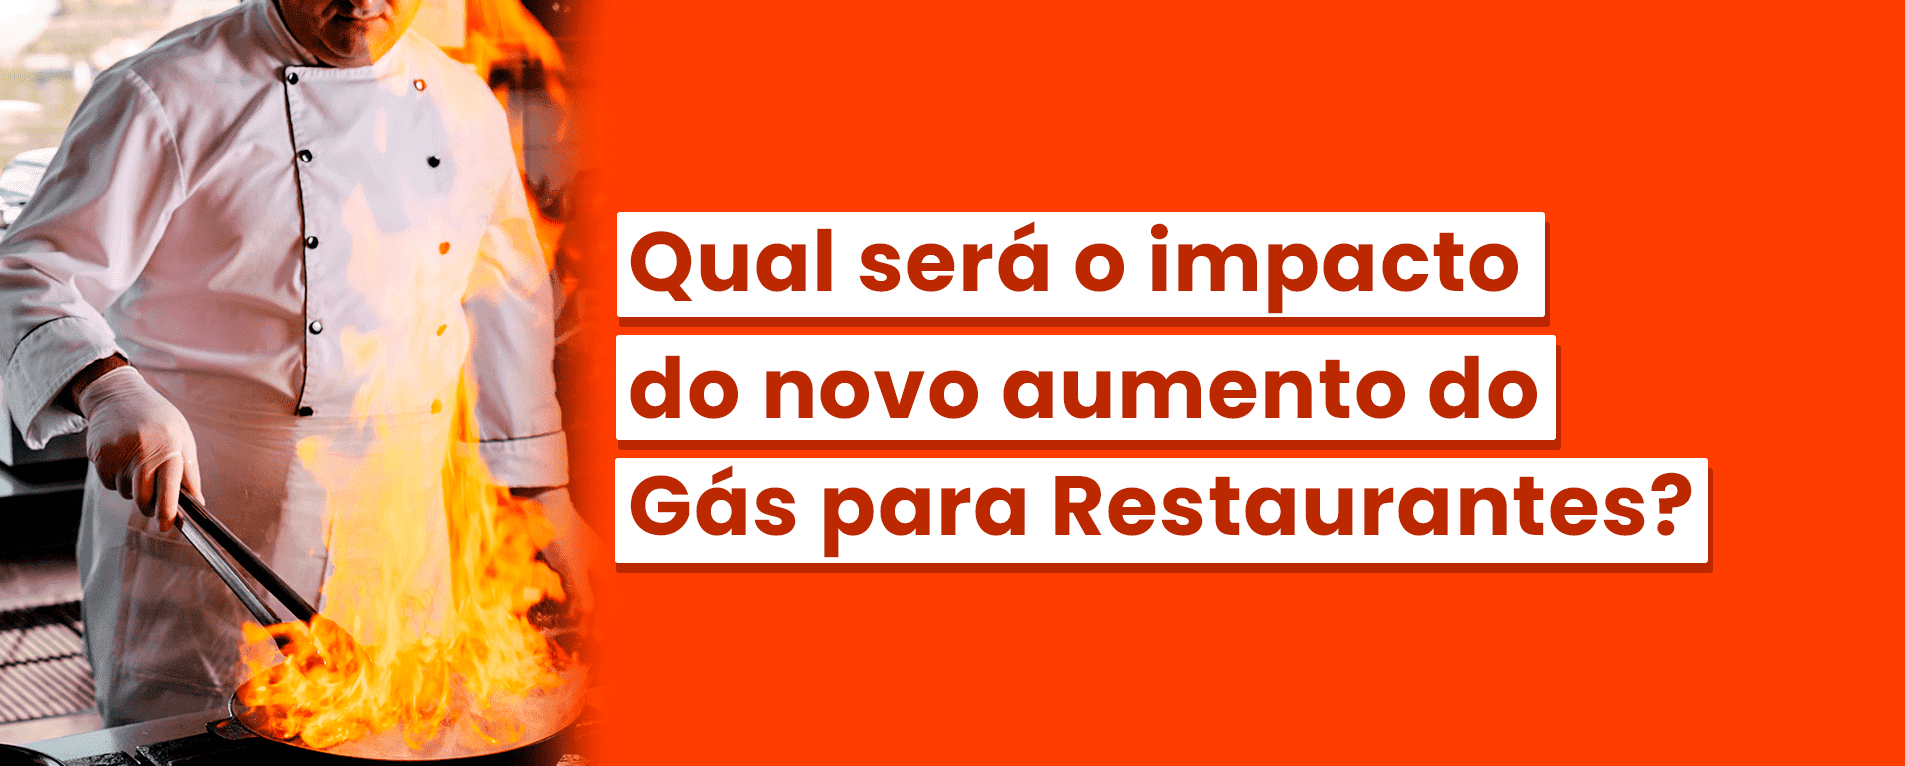 Qual Será o Impacto do Novo Aumento do Gás para Restaurantes?